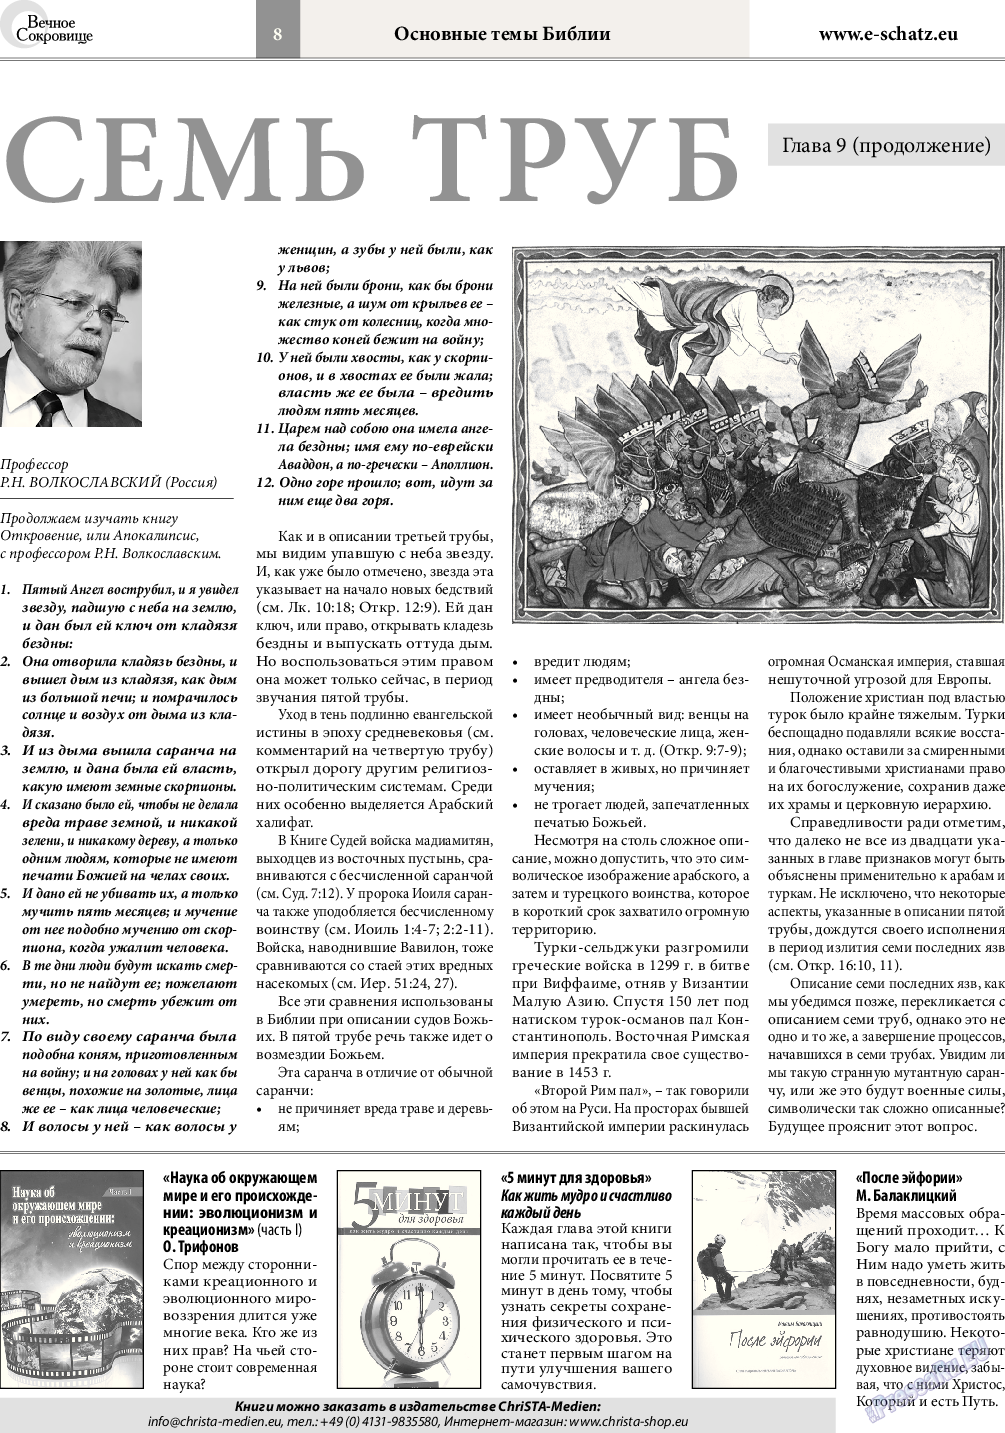 Вечное сокровище (газета). 2015 год, номер 4, стр. 8